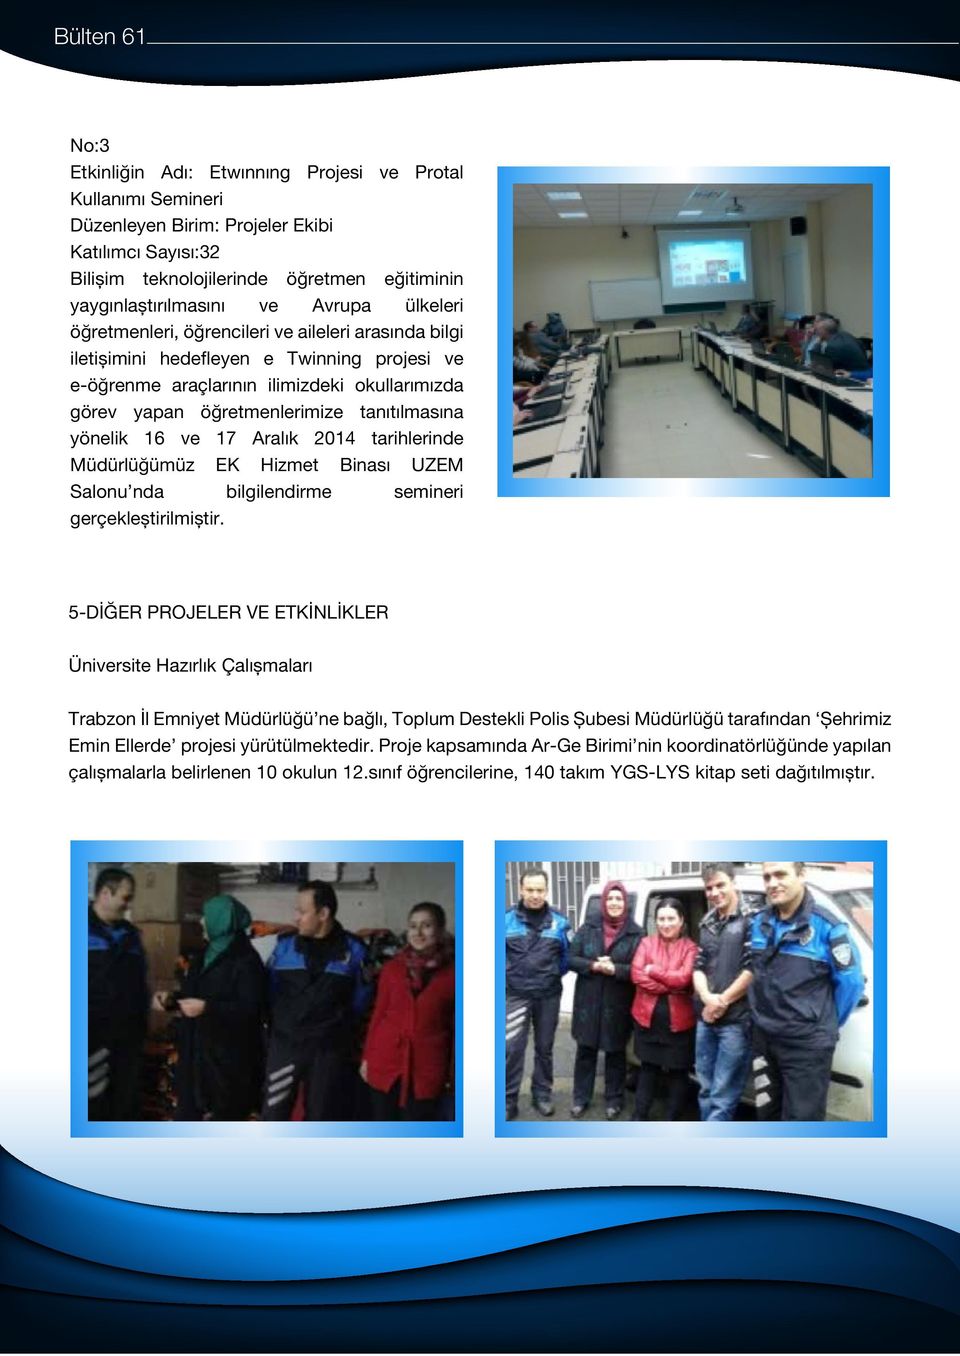 tanıtılmasına yönelik 16 ve 17 Aralık 2014 tarihlerinde Müdürlüğümüz EK Hizmet Binası UZEM Salonu nda bilgilendirme semineri gerçekleștirilmiștir.